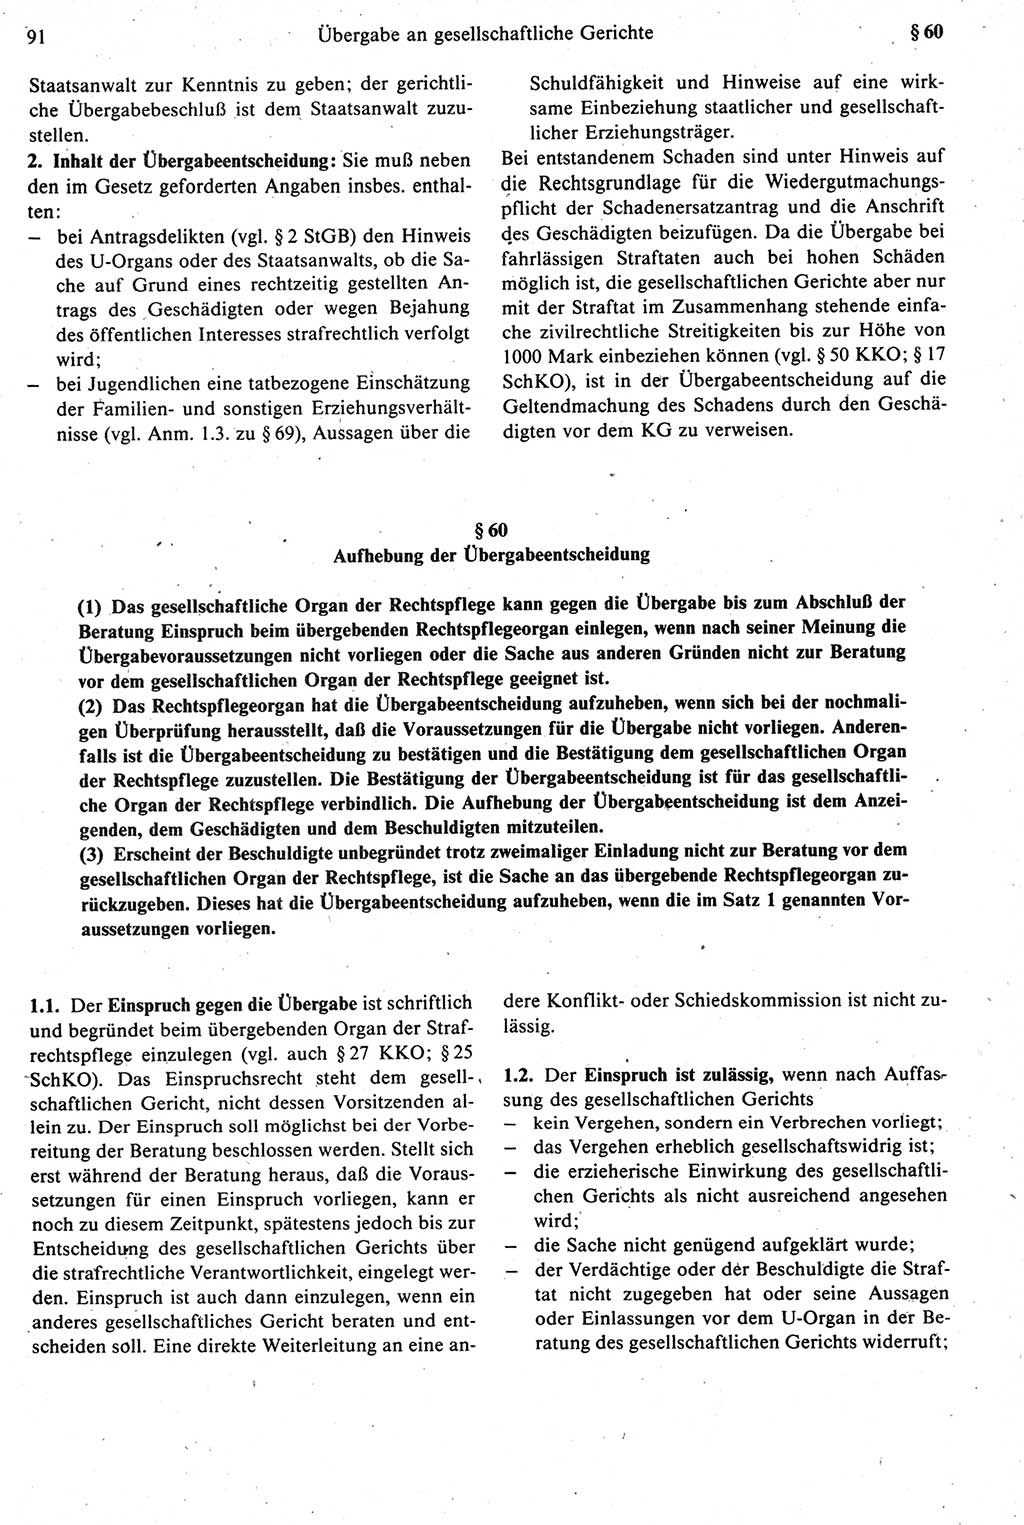 Strafprozeßrecht der DDR [Deutsche Demokratische Republik], Kommentar zur Strafprozeßordnung (StPO) 1987, Seite 91 (Strafprozeßr. DDR Komm. StPO 1987, S. 91)